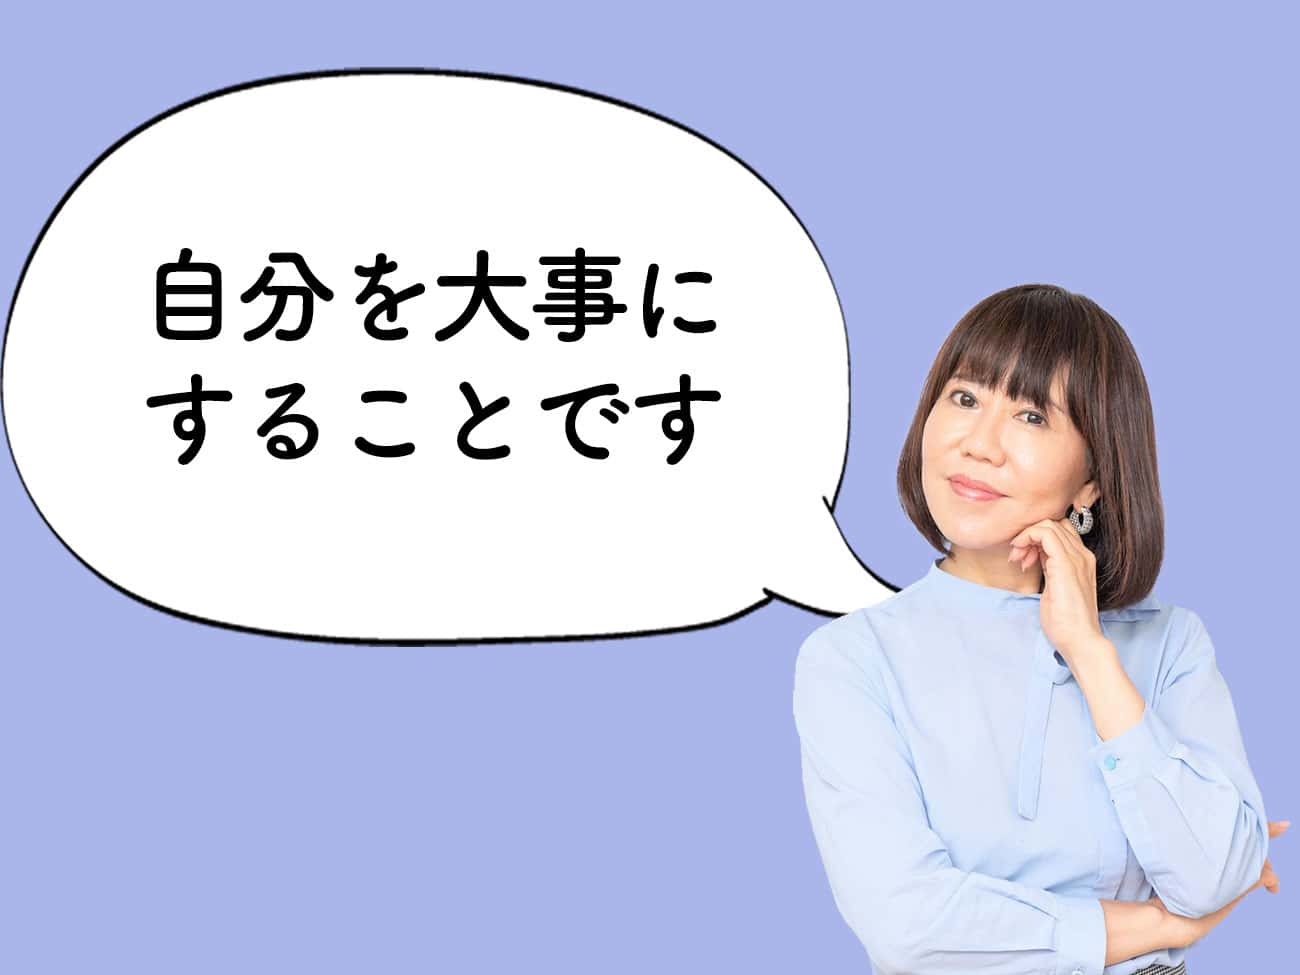 【和田裕美のお悩み相談】SNSでネガティブなメッセージが届きます。